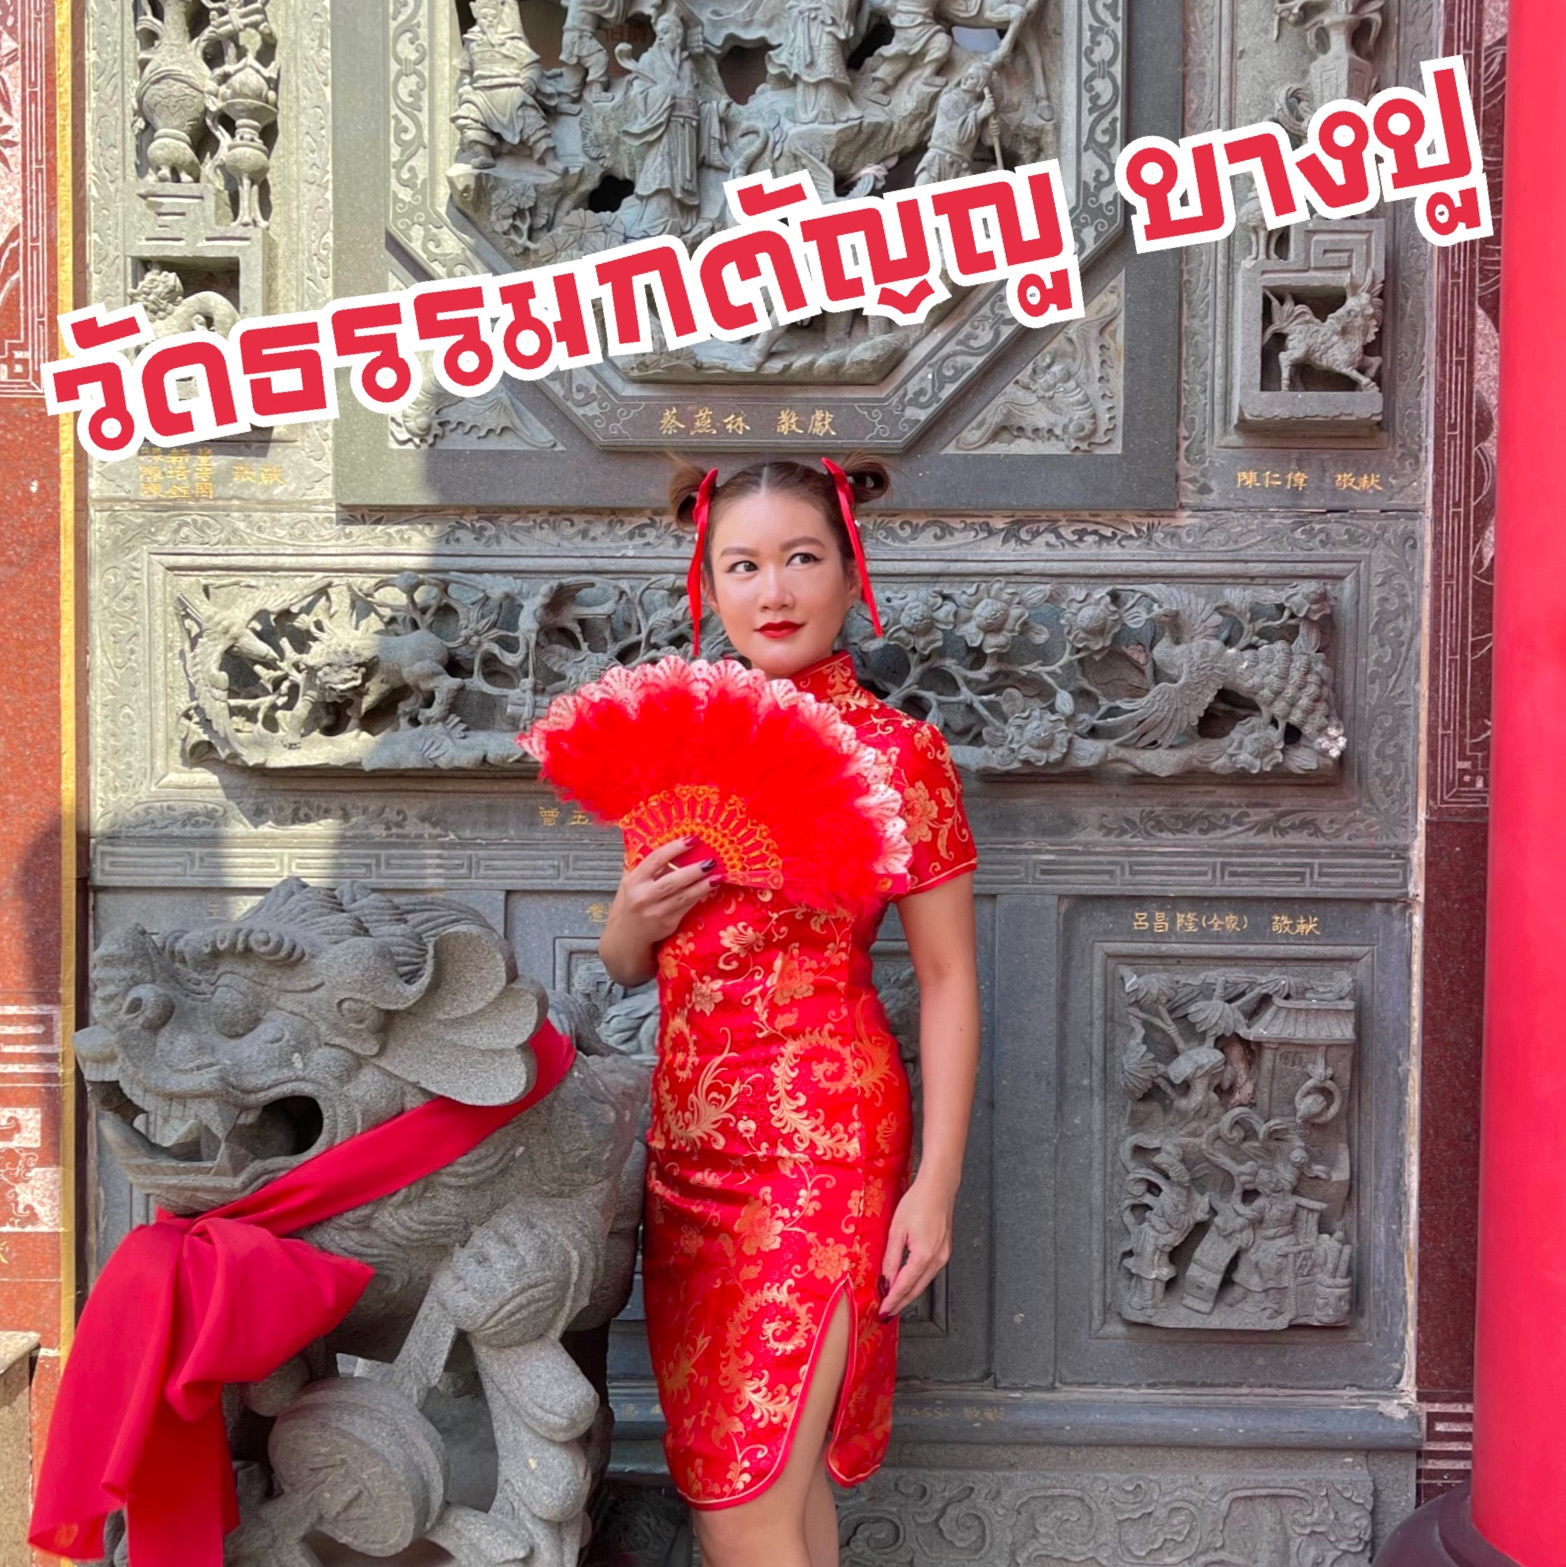 穿越到中国,离曼谷不远。 “Wat Thammkatanyu,Bang Pu”